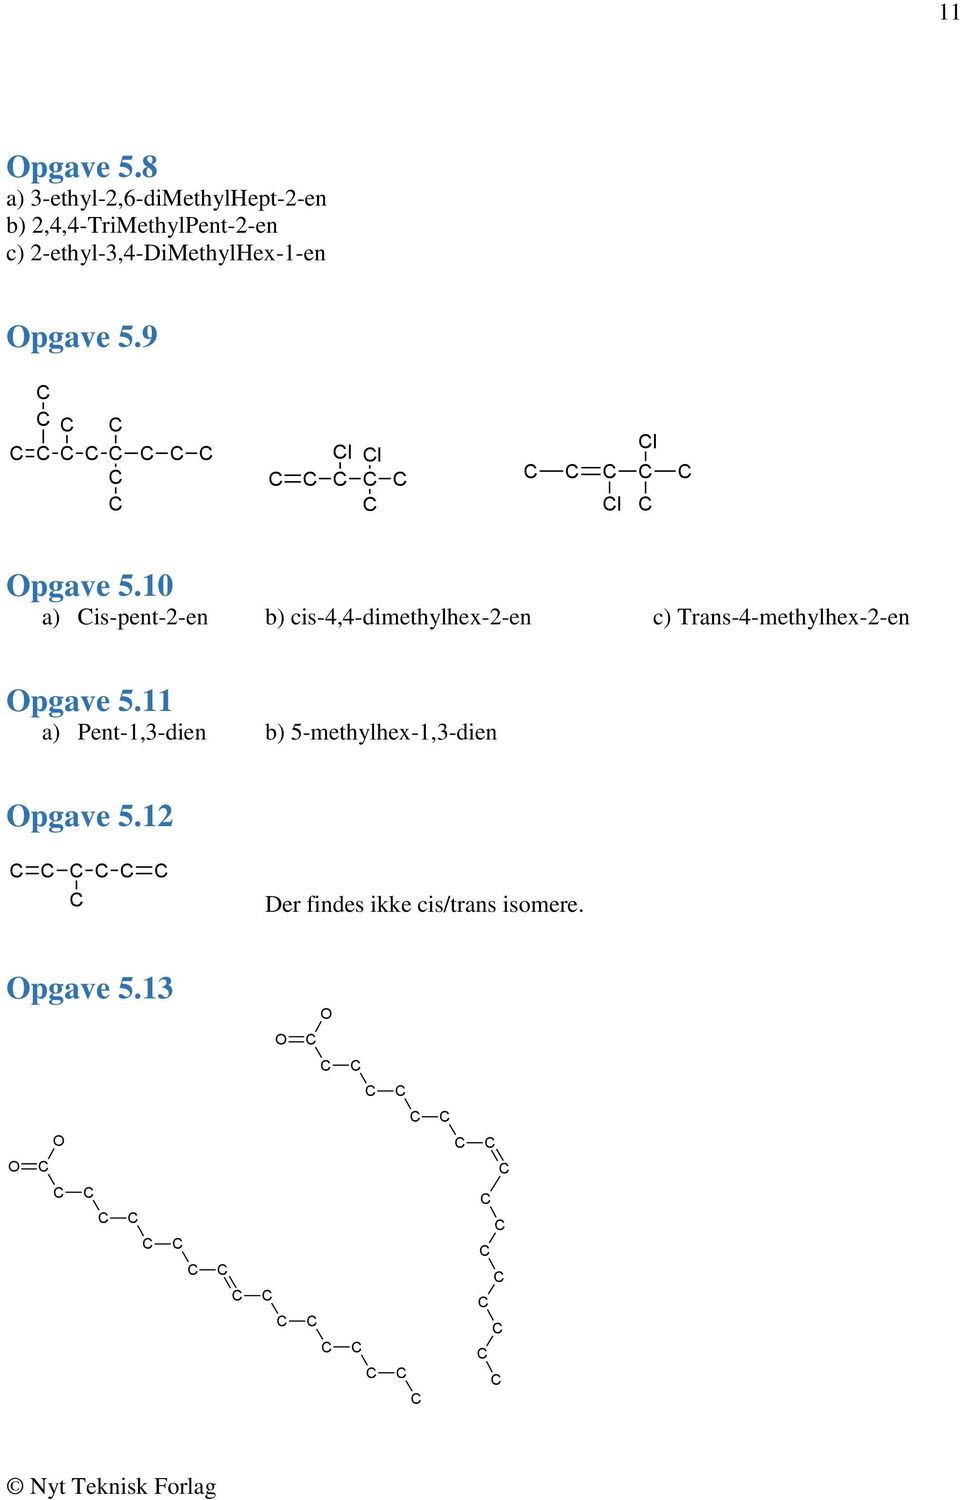 2-ethyl-,4-DiMethylHex-1-en pgave 5.9 l l l l pgave 5.